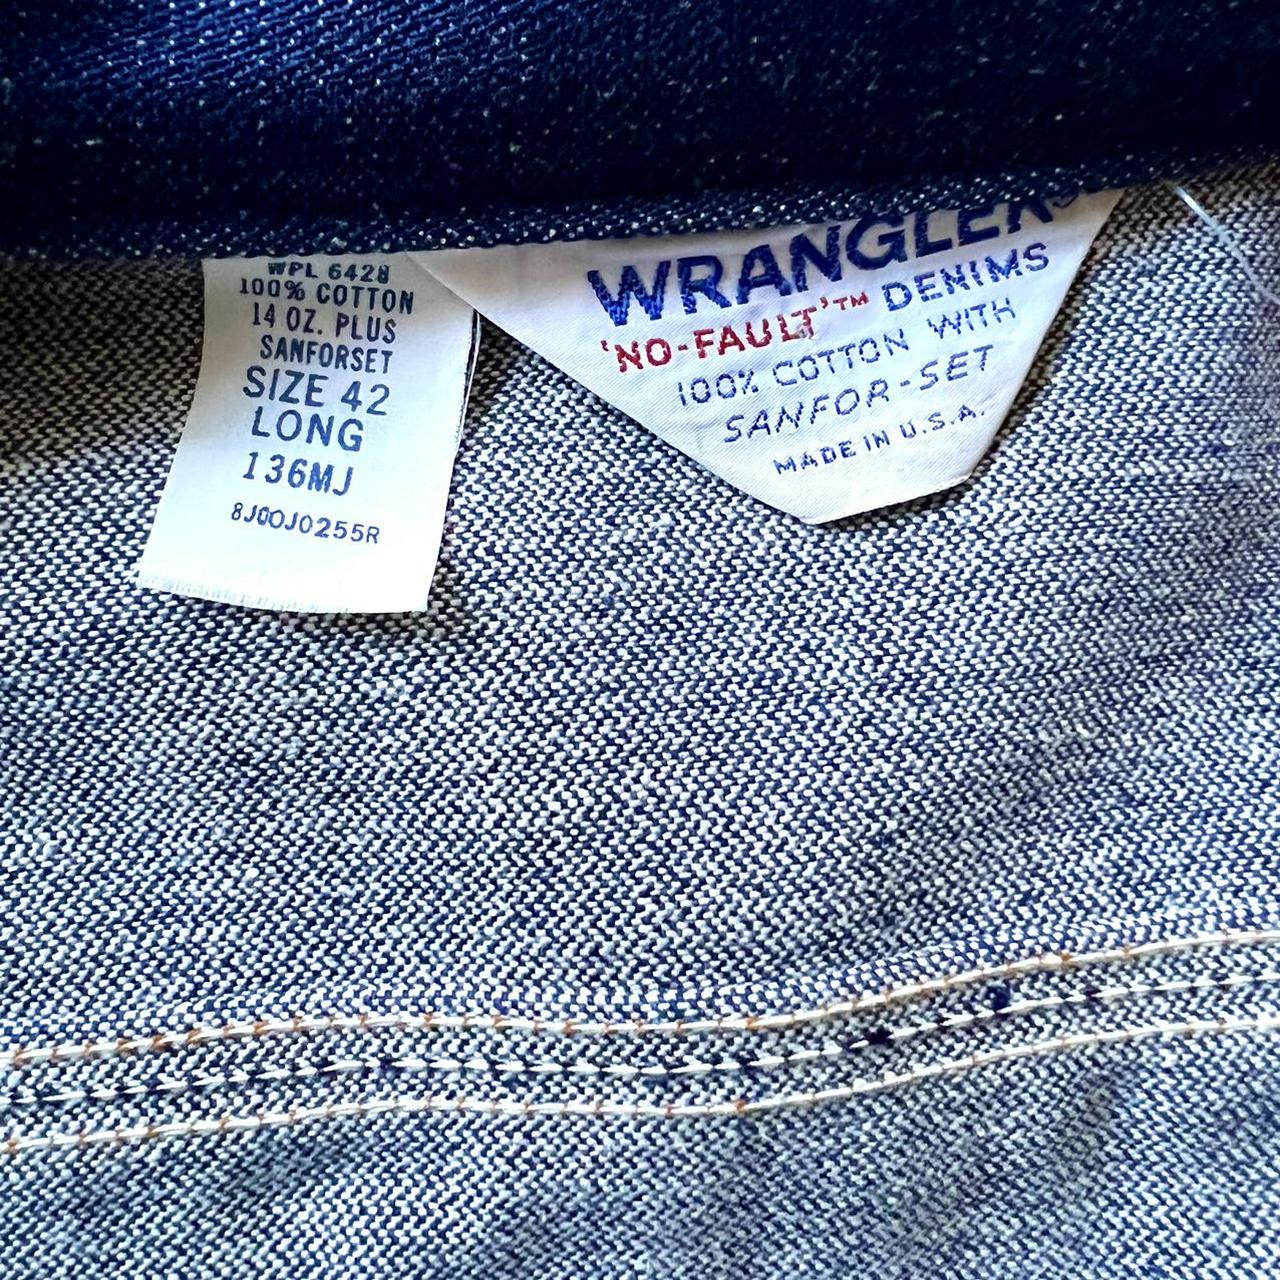 Vintage Wranglers denim jacket. Excellent condition,... - Depop